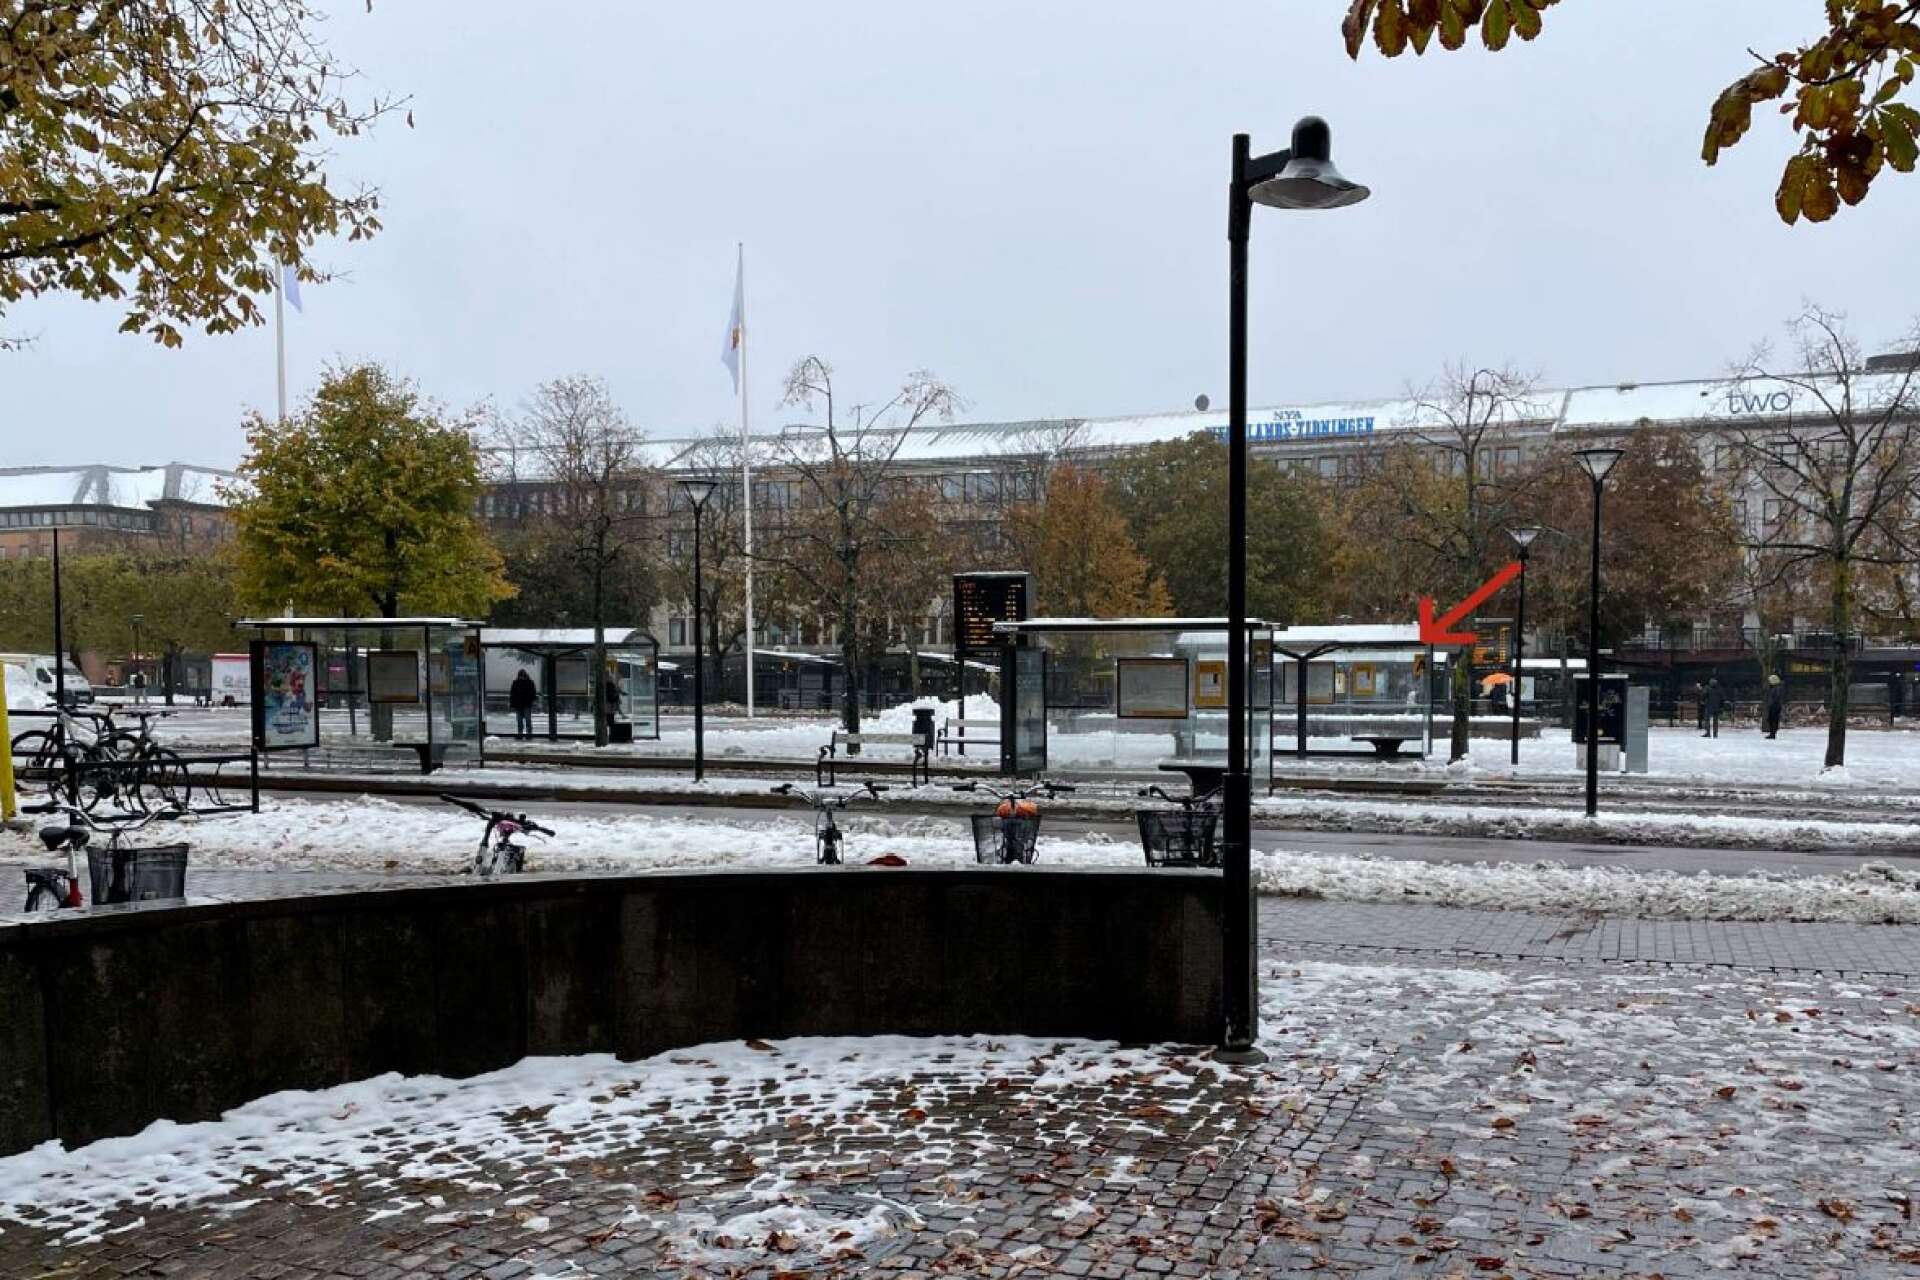 De två tonårsflickorna blev antastade av en berusad man när de väntade på bussen på Stora torget i Karlstad. Mannen blev sedan grovt misshandlad på platsen.